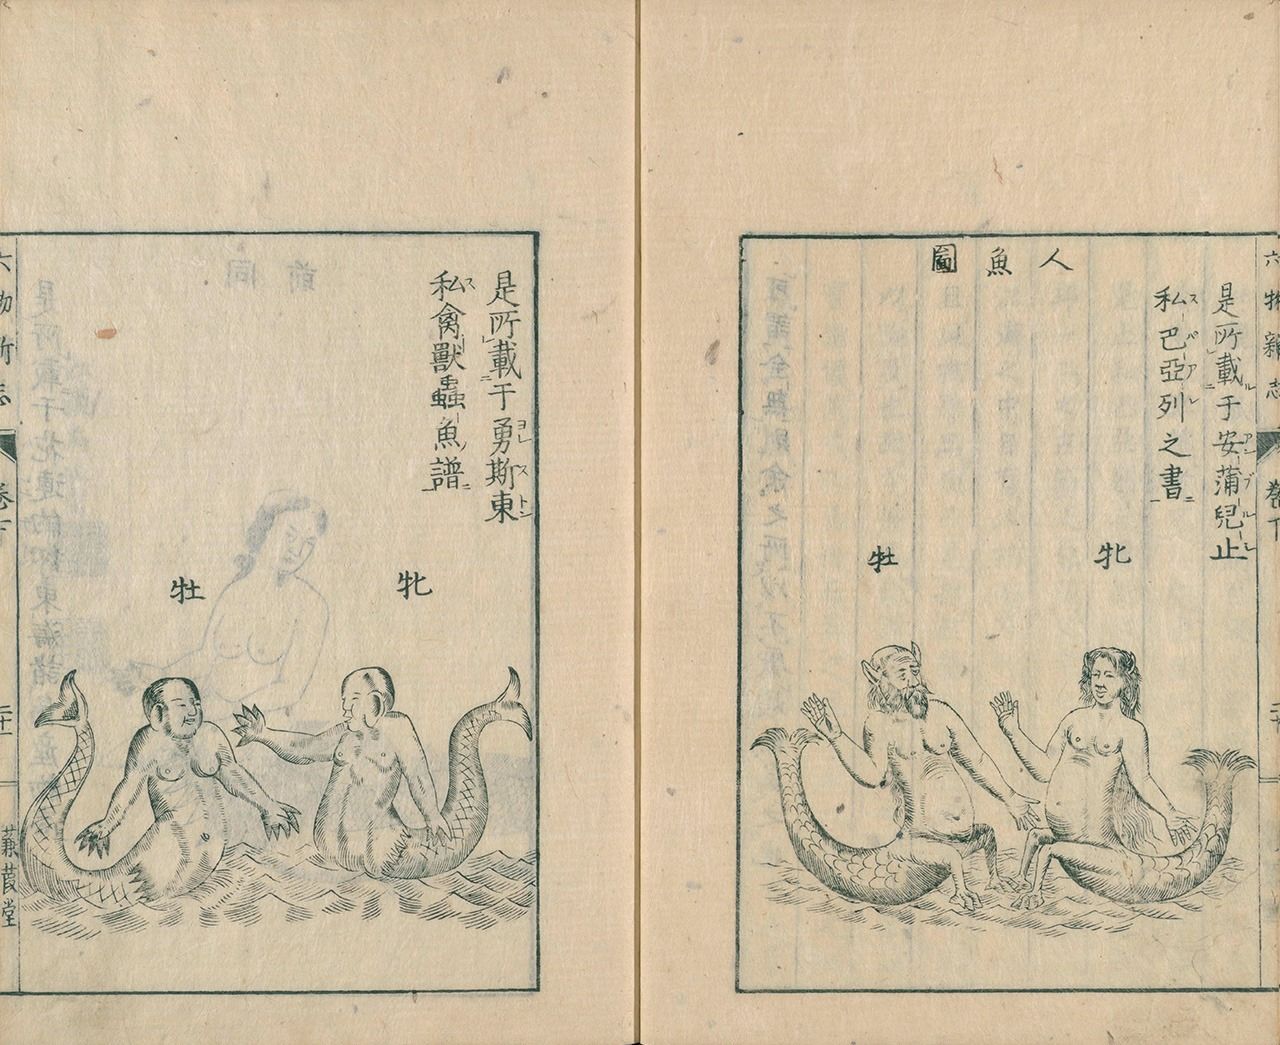 Ilustraciones de sirenas de Johnston (izquierda) y de Paré (derecha), recogidas en el Rokumotsu shinshi. (Colección digital de la Biblioteca Nacional de la Dieta)